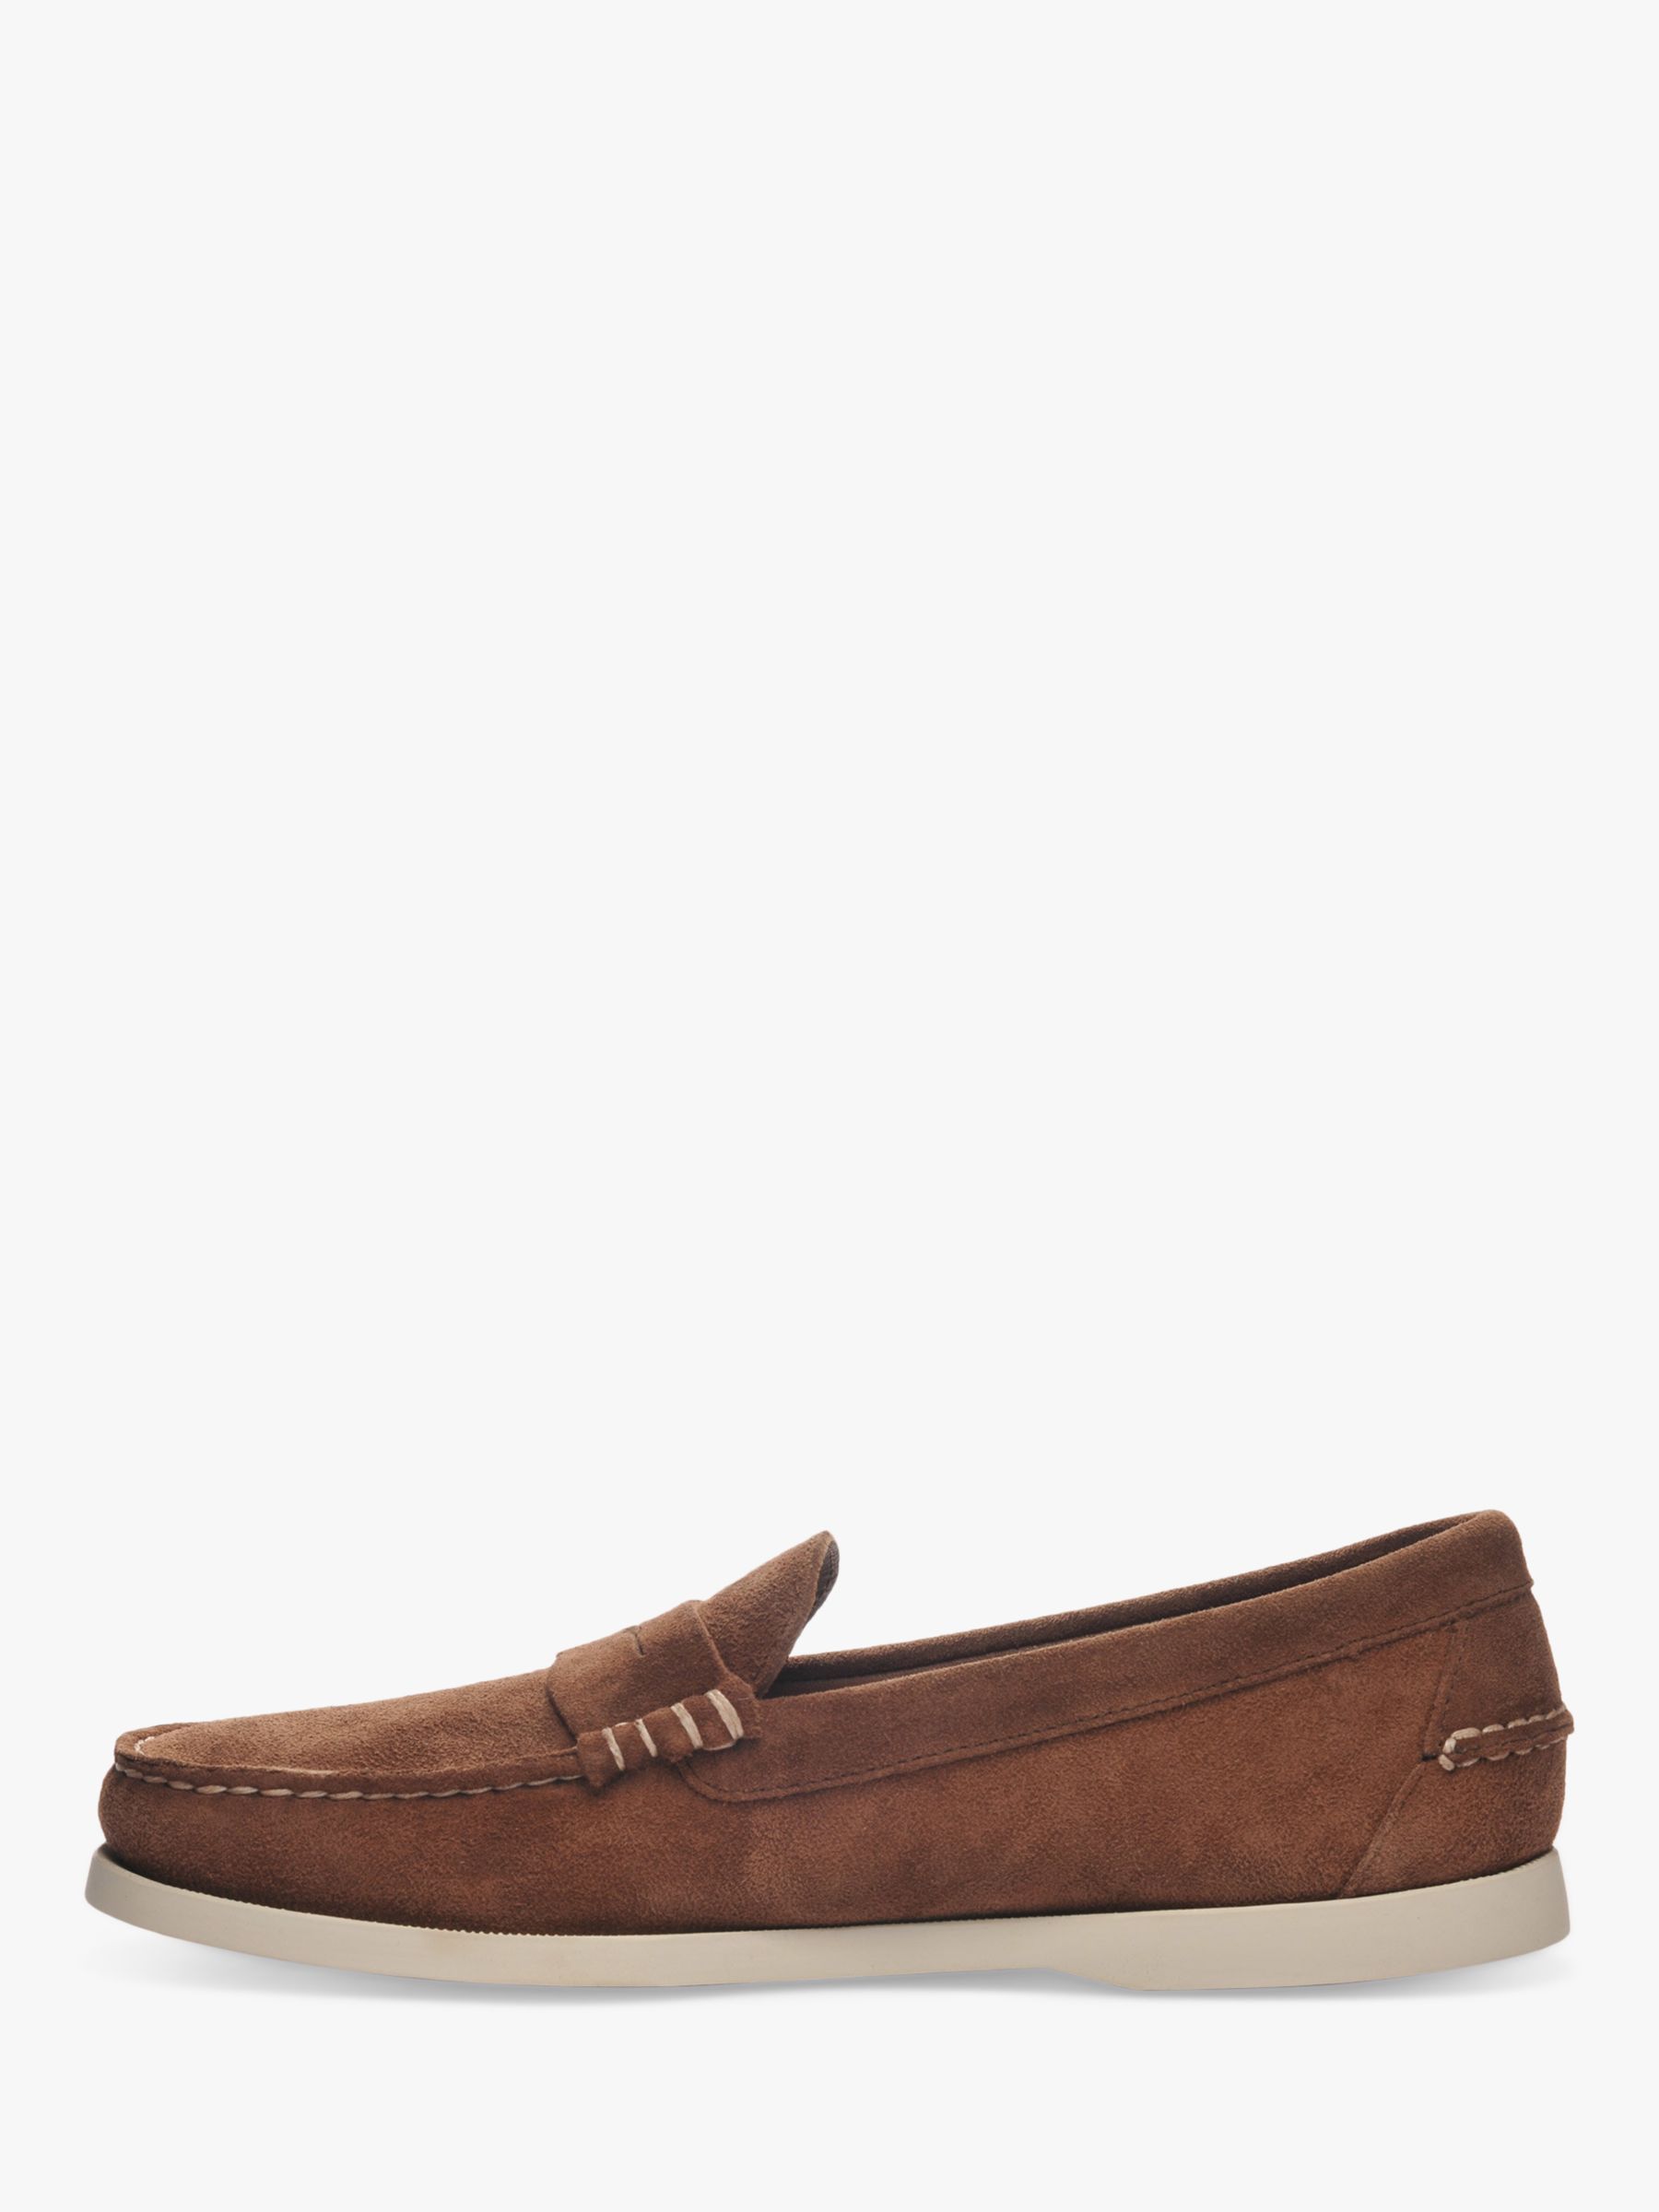 Sebago Dan Suede Boat Shoes, Dark Brown, 8